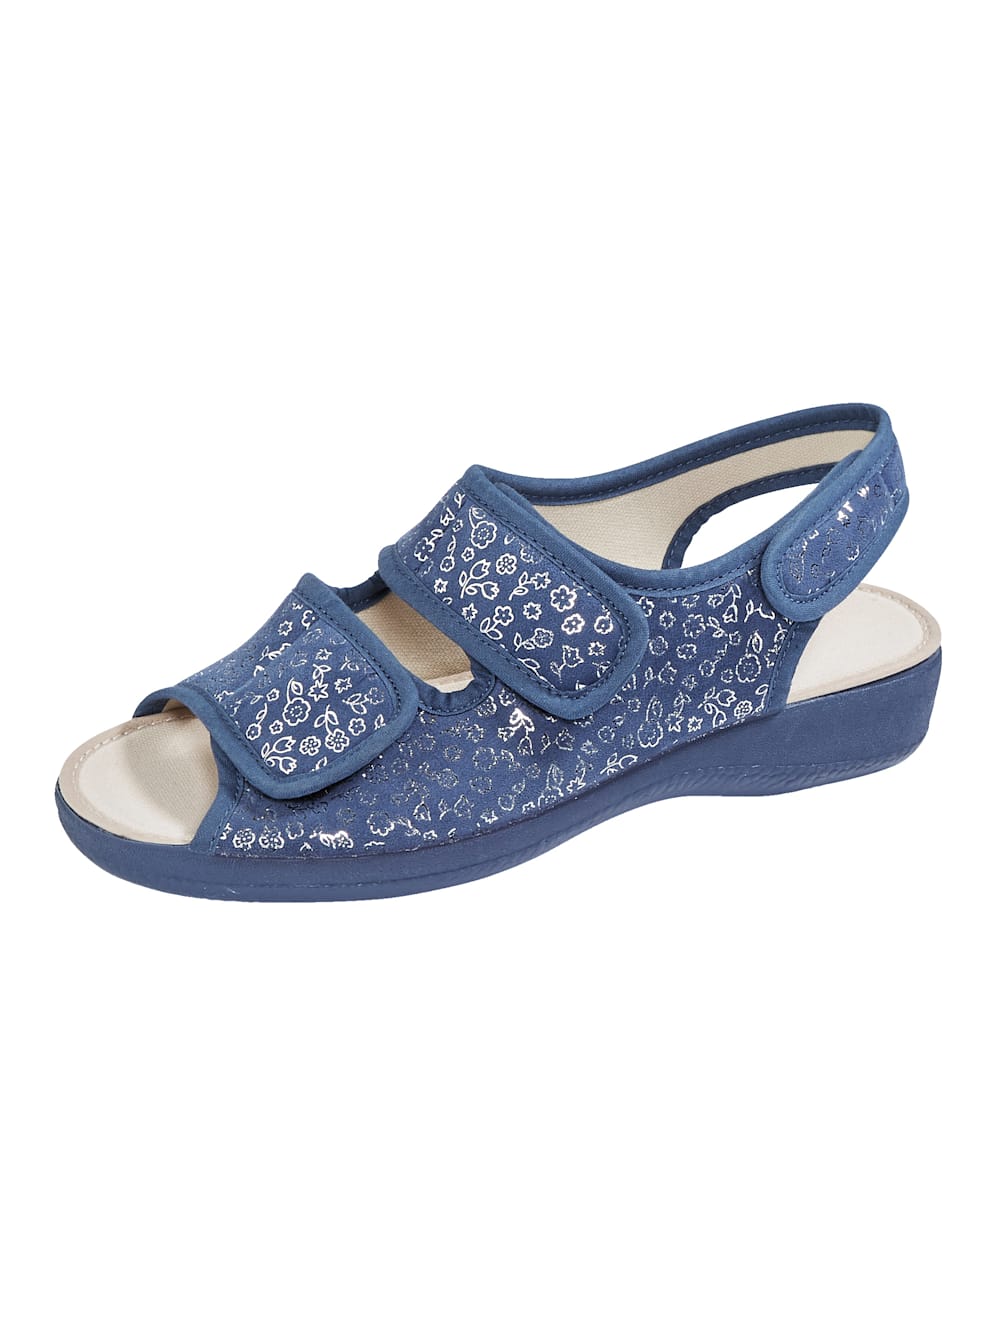 Naturl\u00e4ufer Sandales confort bleu-blanc motif abstrait style d\u00e9contract\u00e9 Chaussures Sandales Sandales confort Naturläufer 